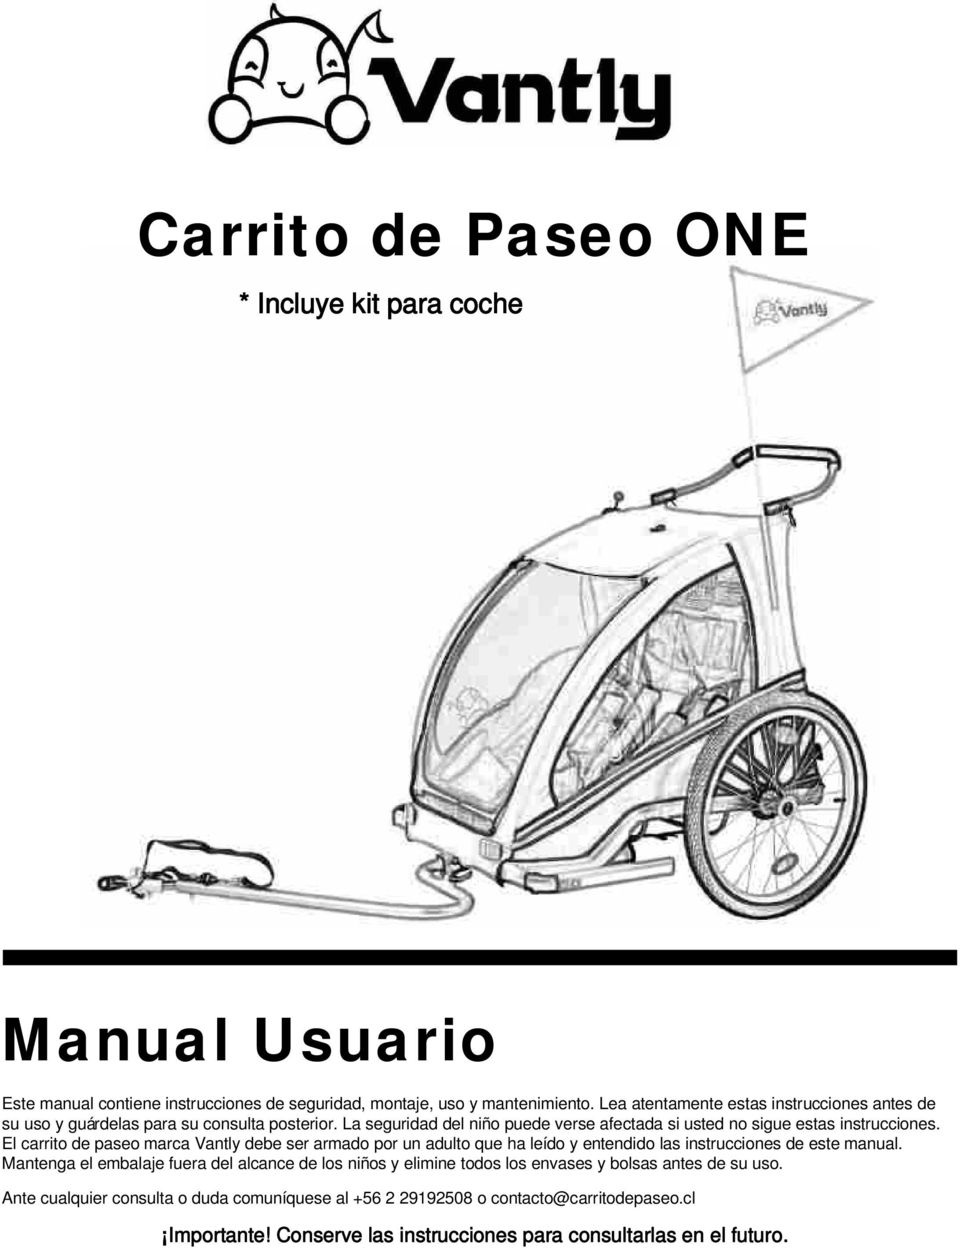 El carrito de paseo marca Vantly debe ser armado por un adulto que ha leído y entendido las instrucciones de este manual.